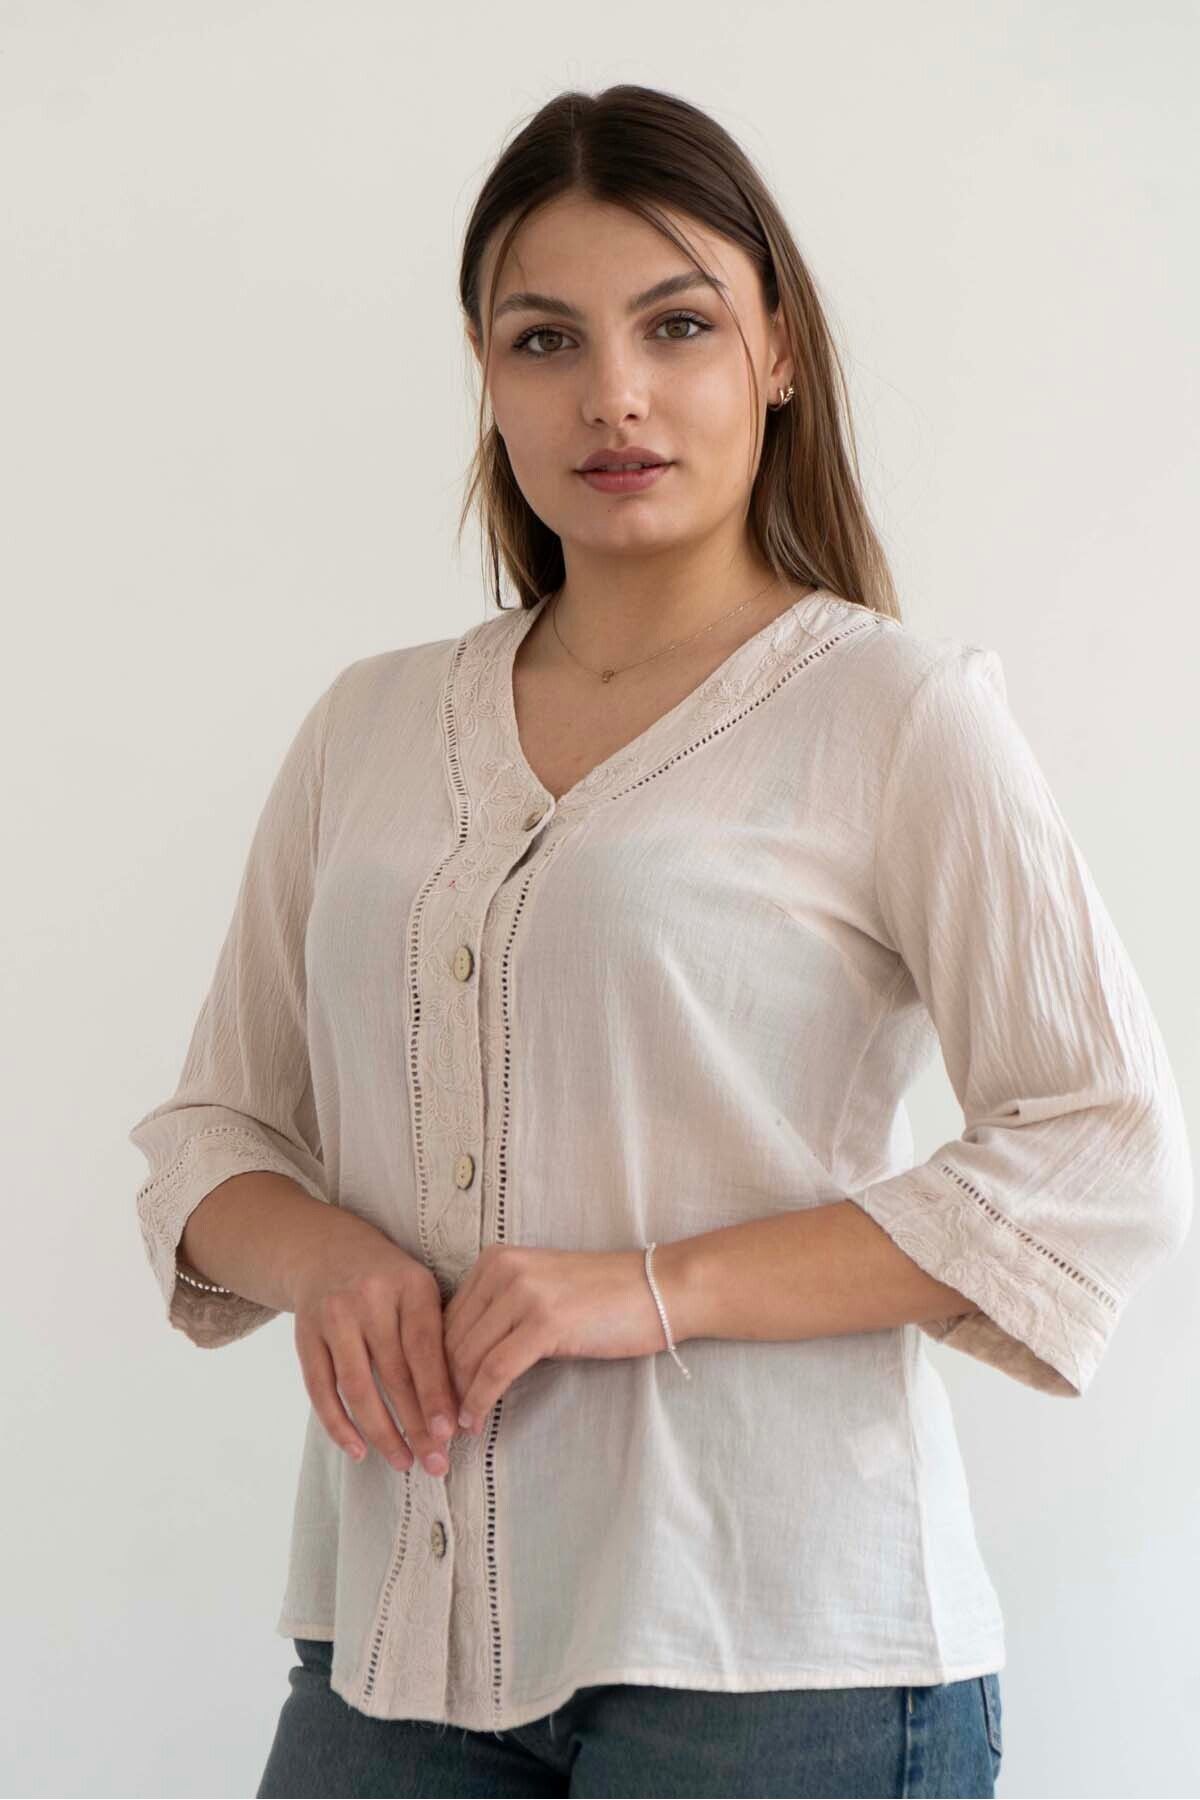 citycenterfashion Kadın Büyük Beden Gömlek Bluz V Yaka Önden Düğmeli %100 Pamuk Organik Şile Bezi Keten cty-akc-689